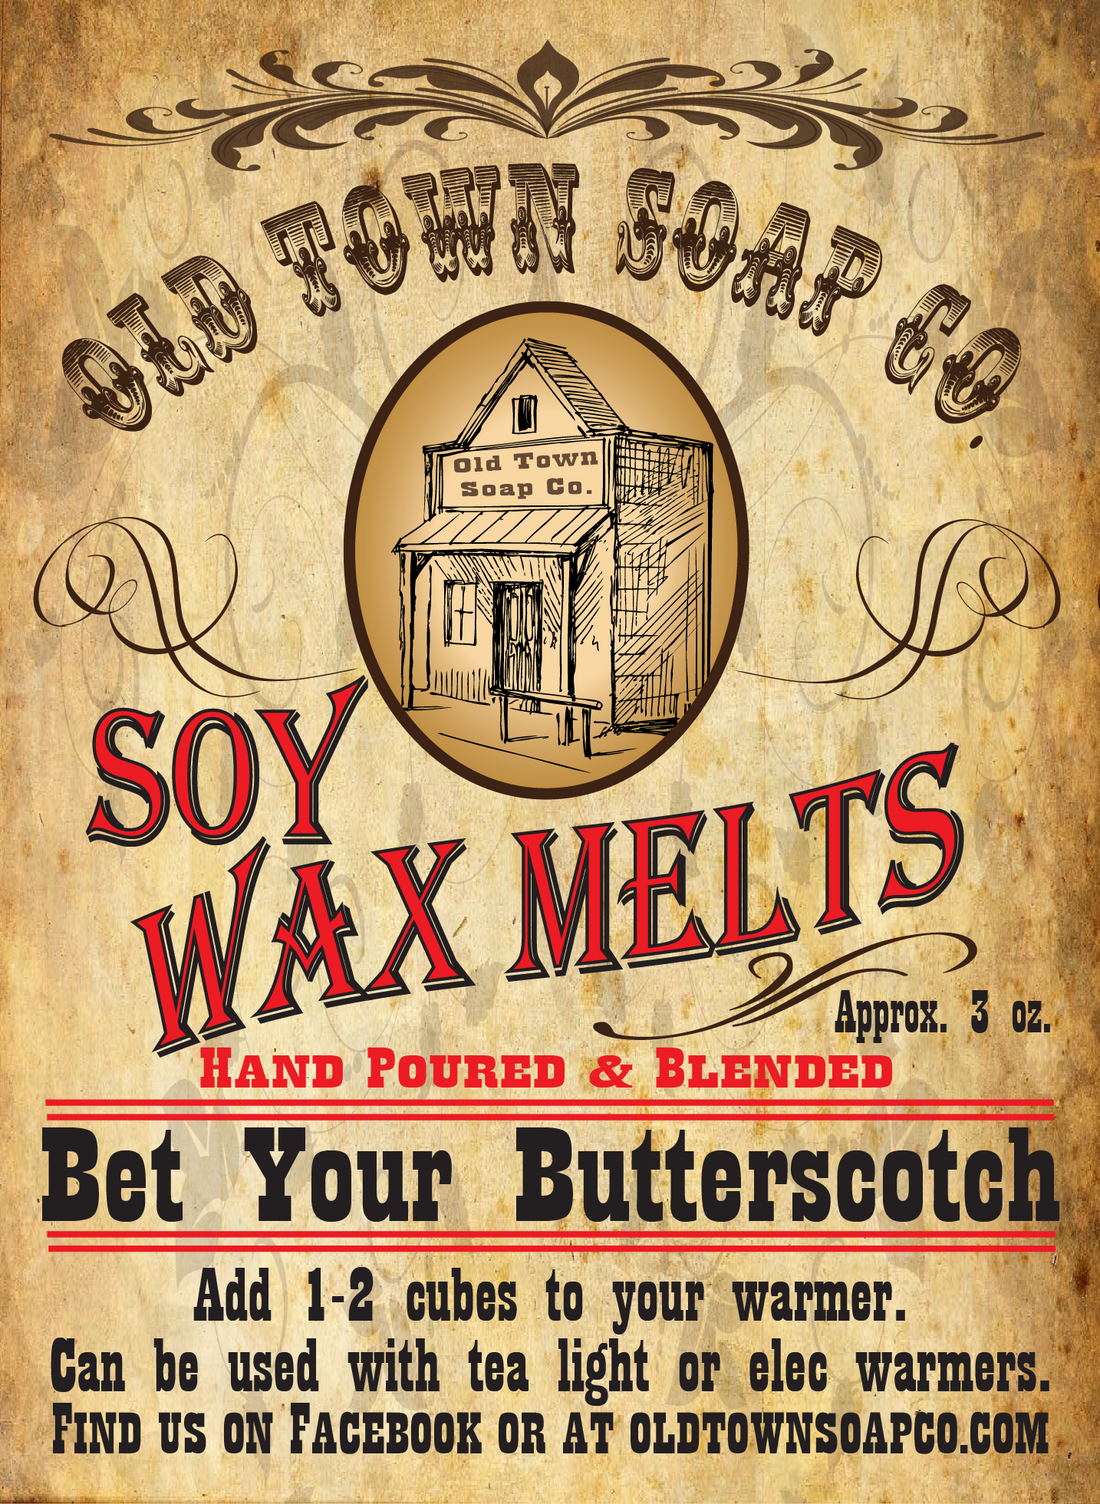 Bet Your Butterscotch Wax Melts